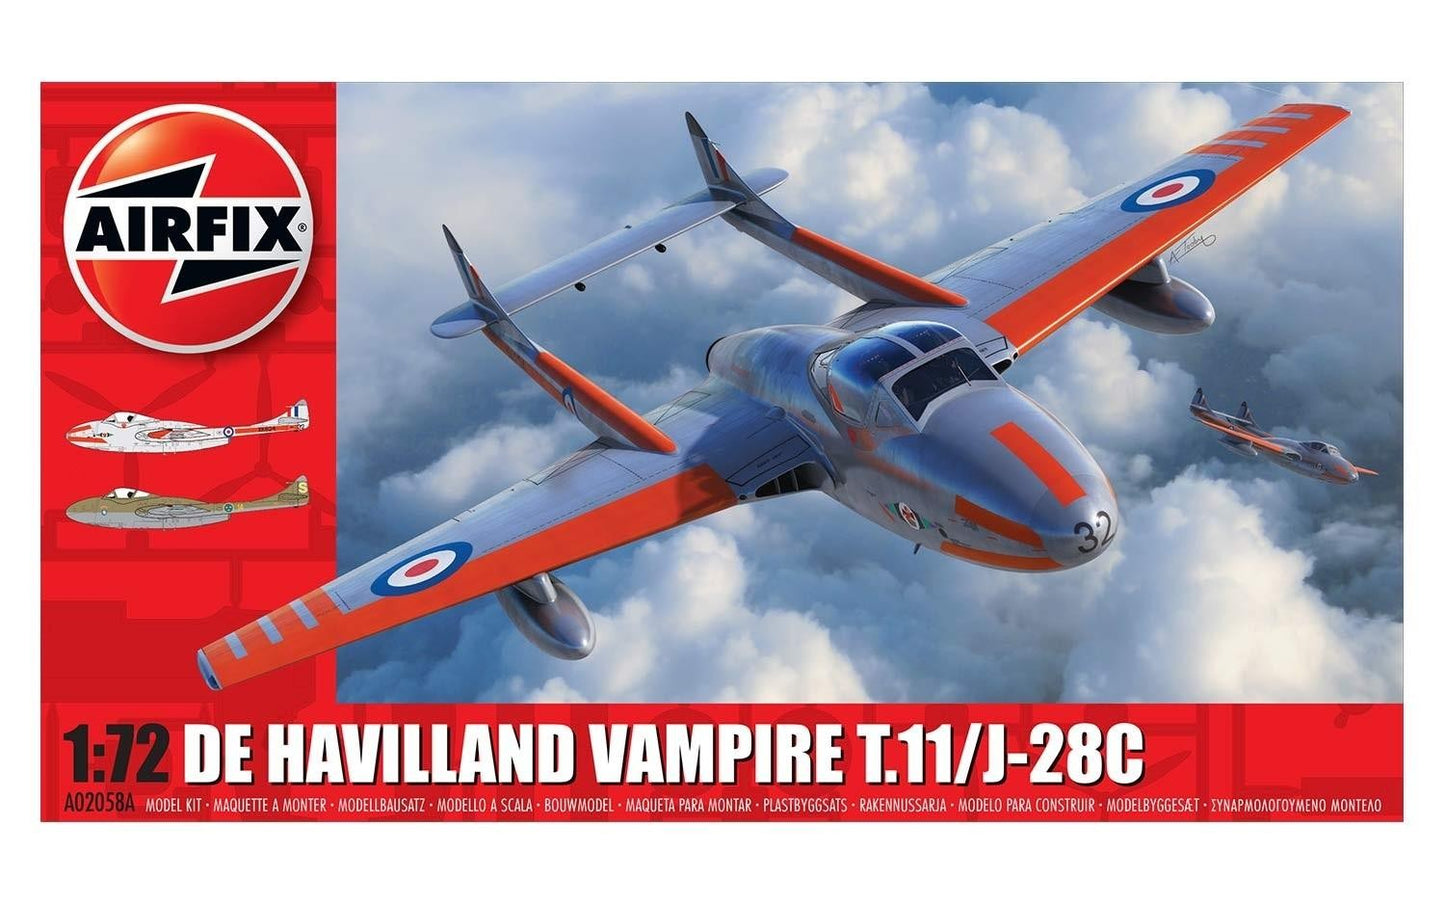 De Havilland Vampire T.11/J-28C - AIRFIX 1/72